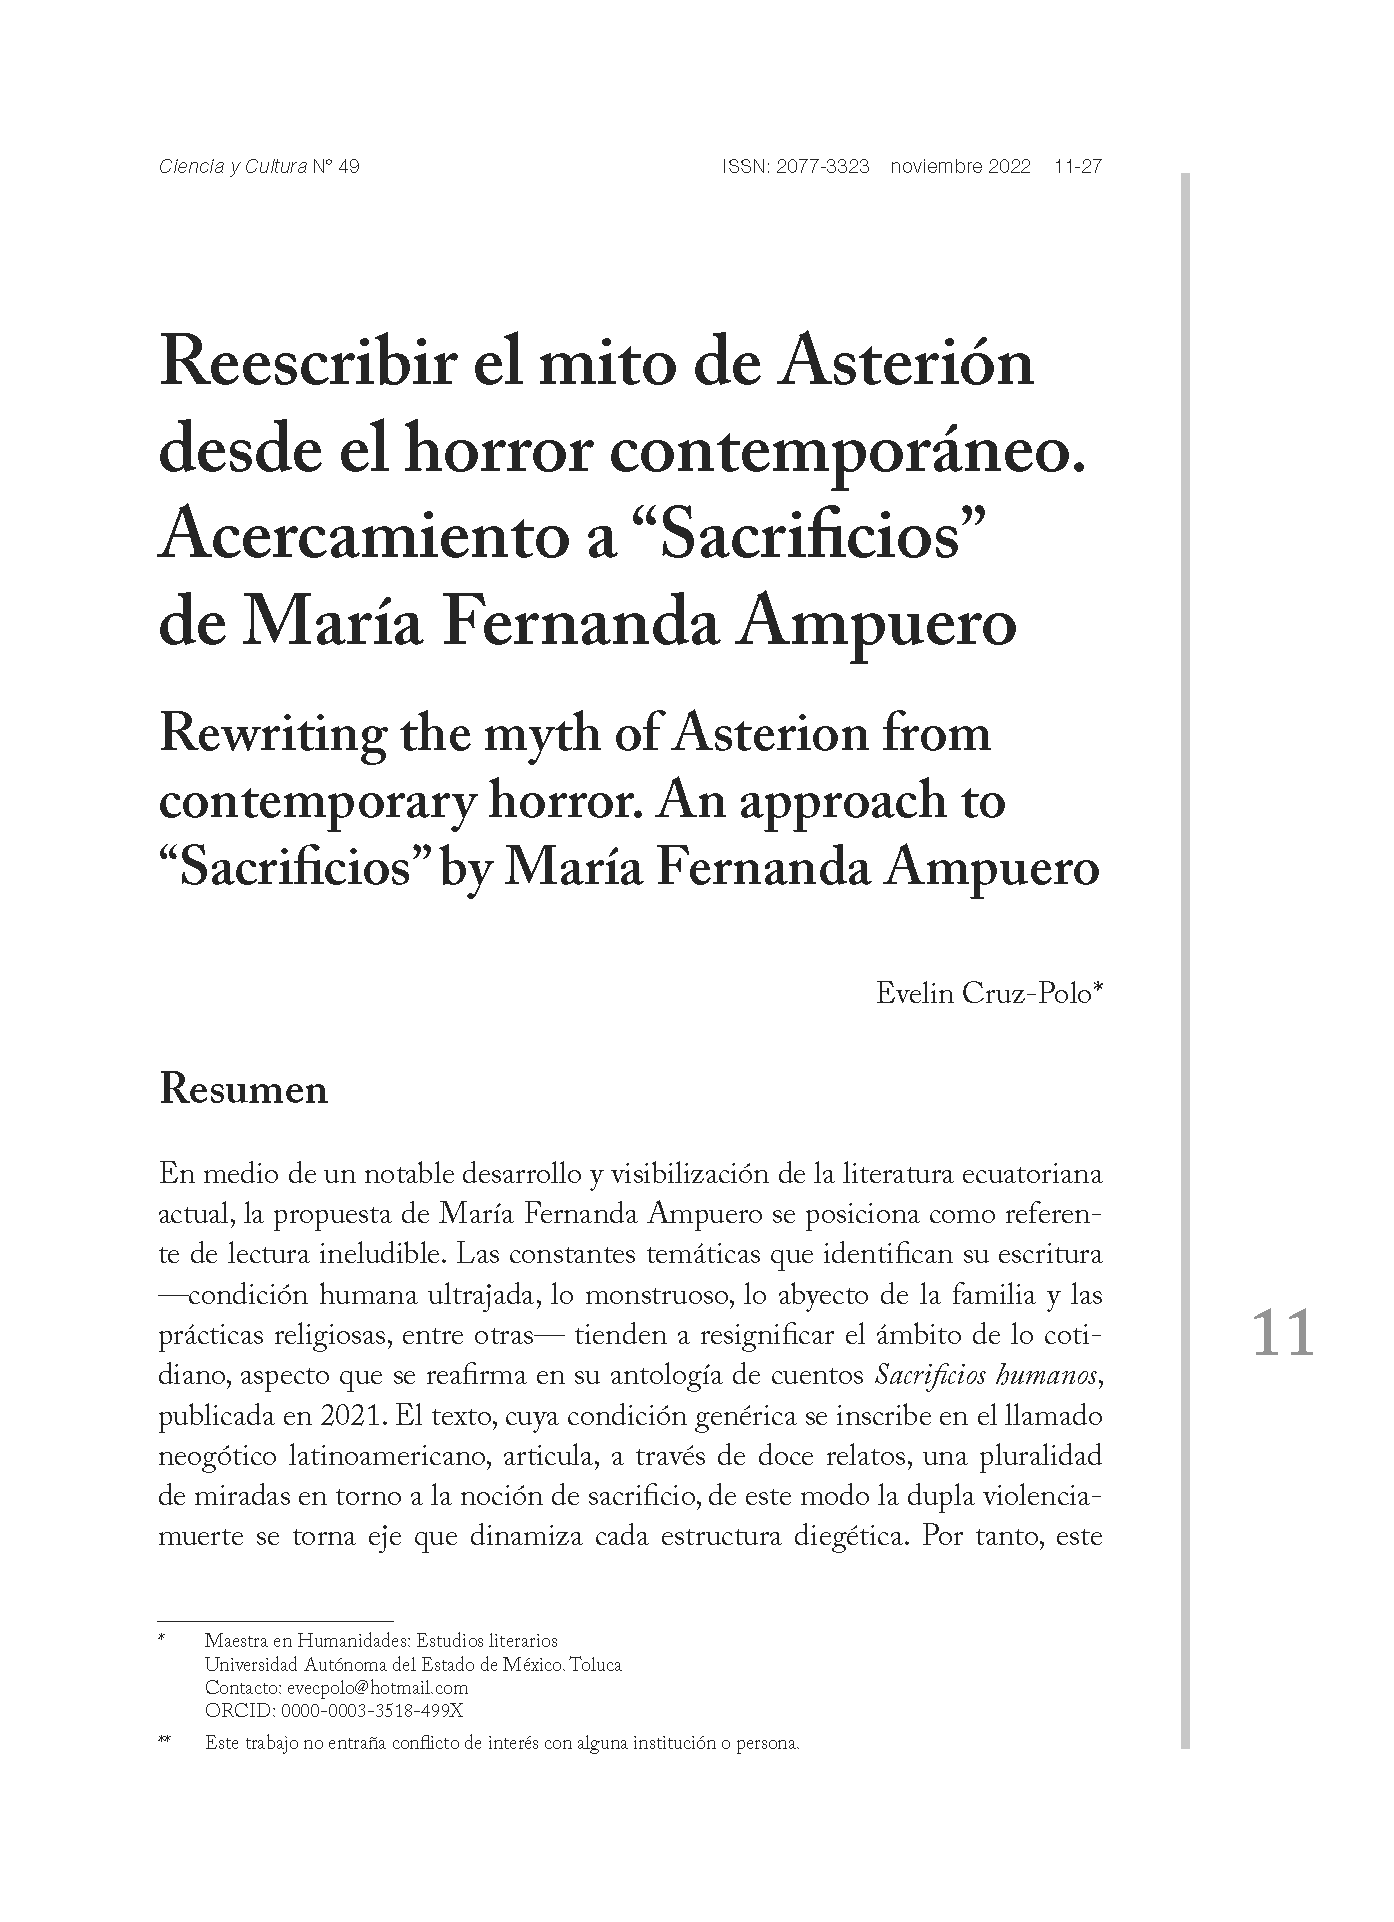 Reescribir el mito de Asterión desde el horror contemporáneo. Acercamiento a “Sacrificios” de María Fernanda Ampuero